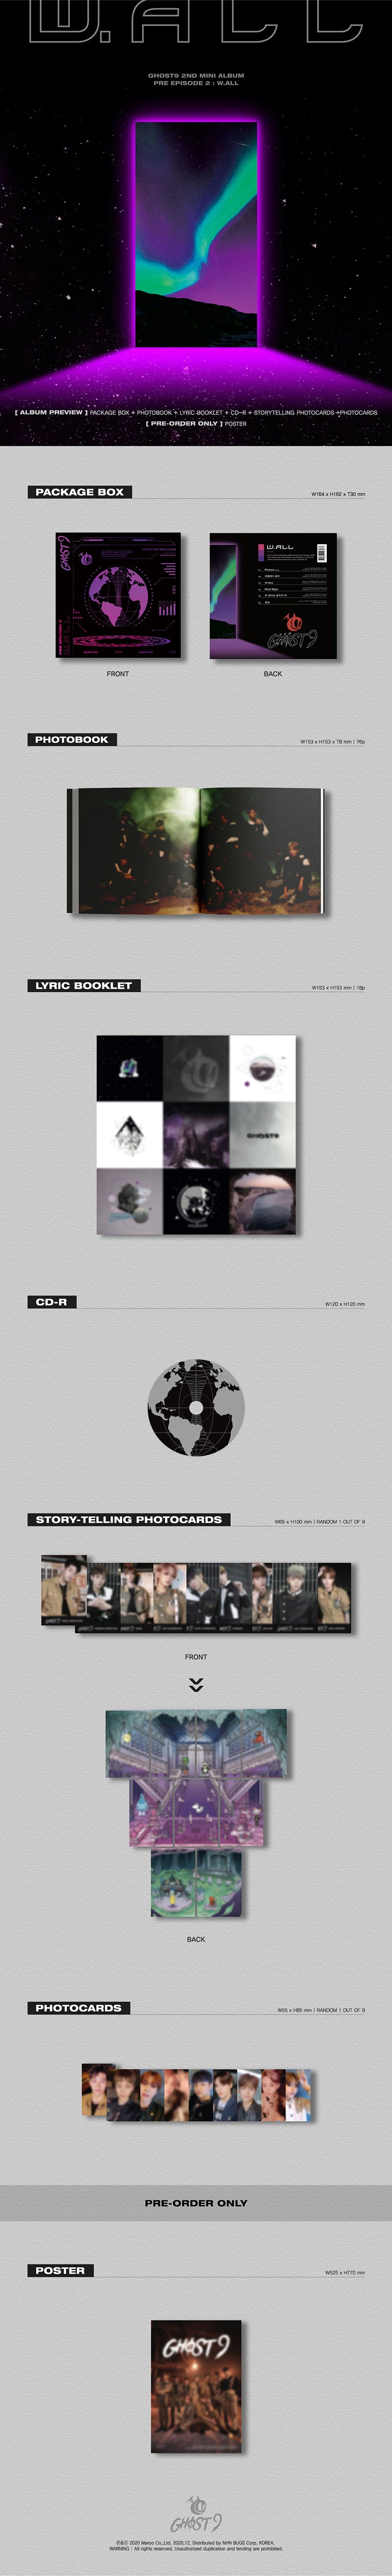 GHOST9 - 2nd Mini Album [PRE EPISODE 2 : W.ALL]